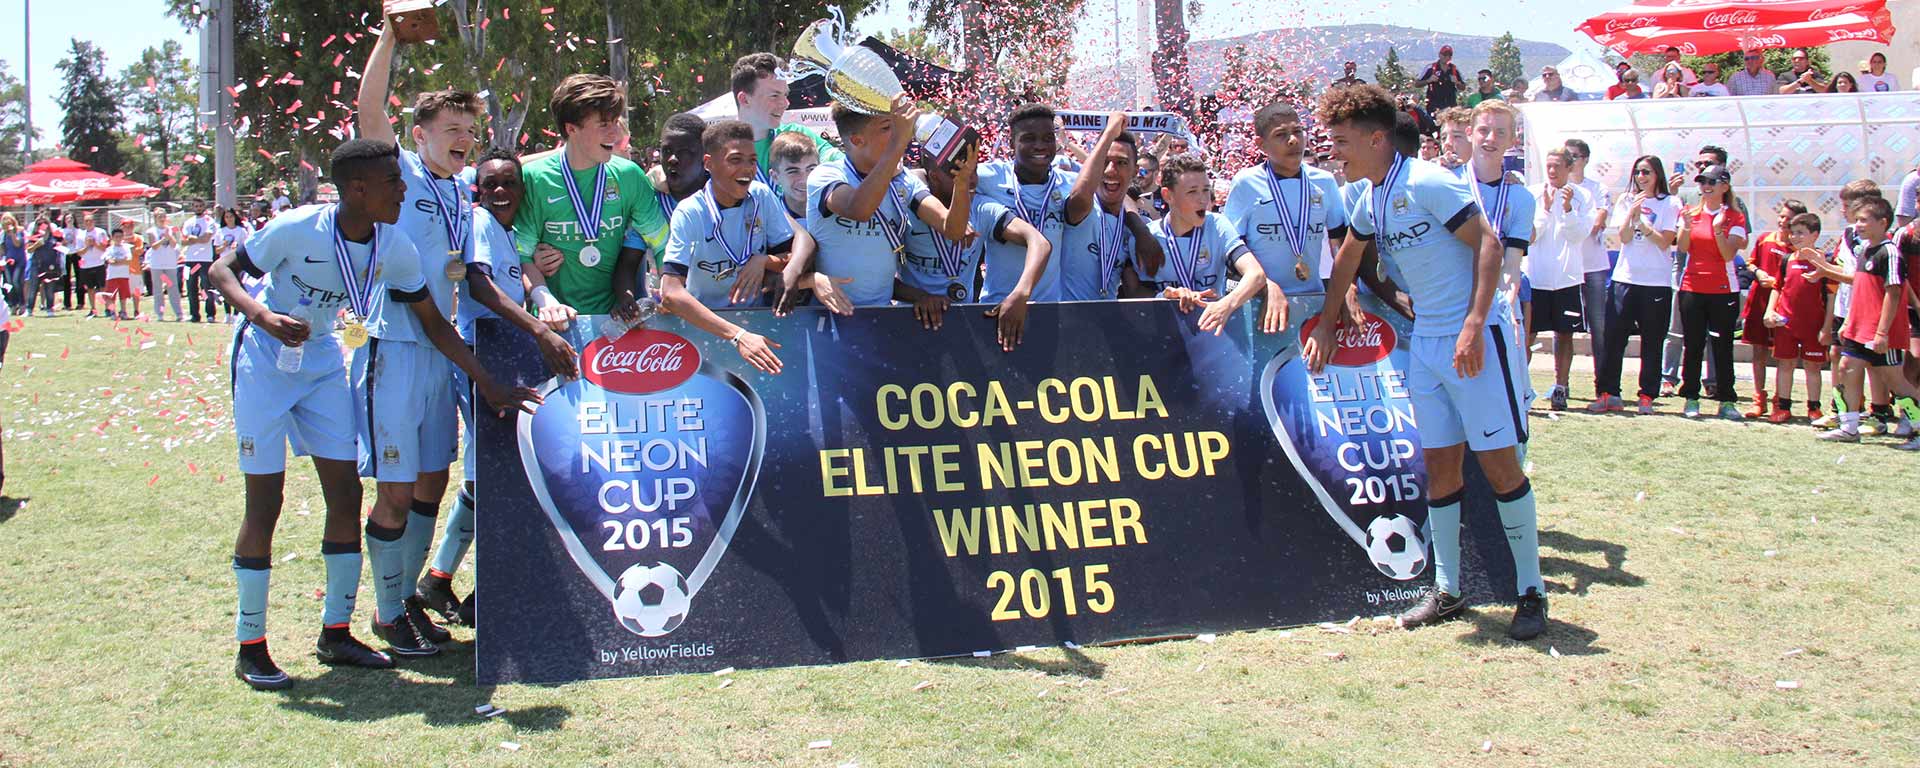 Coca-Cola Elite Neon Cup 2015